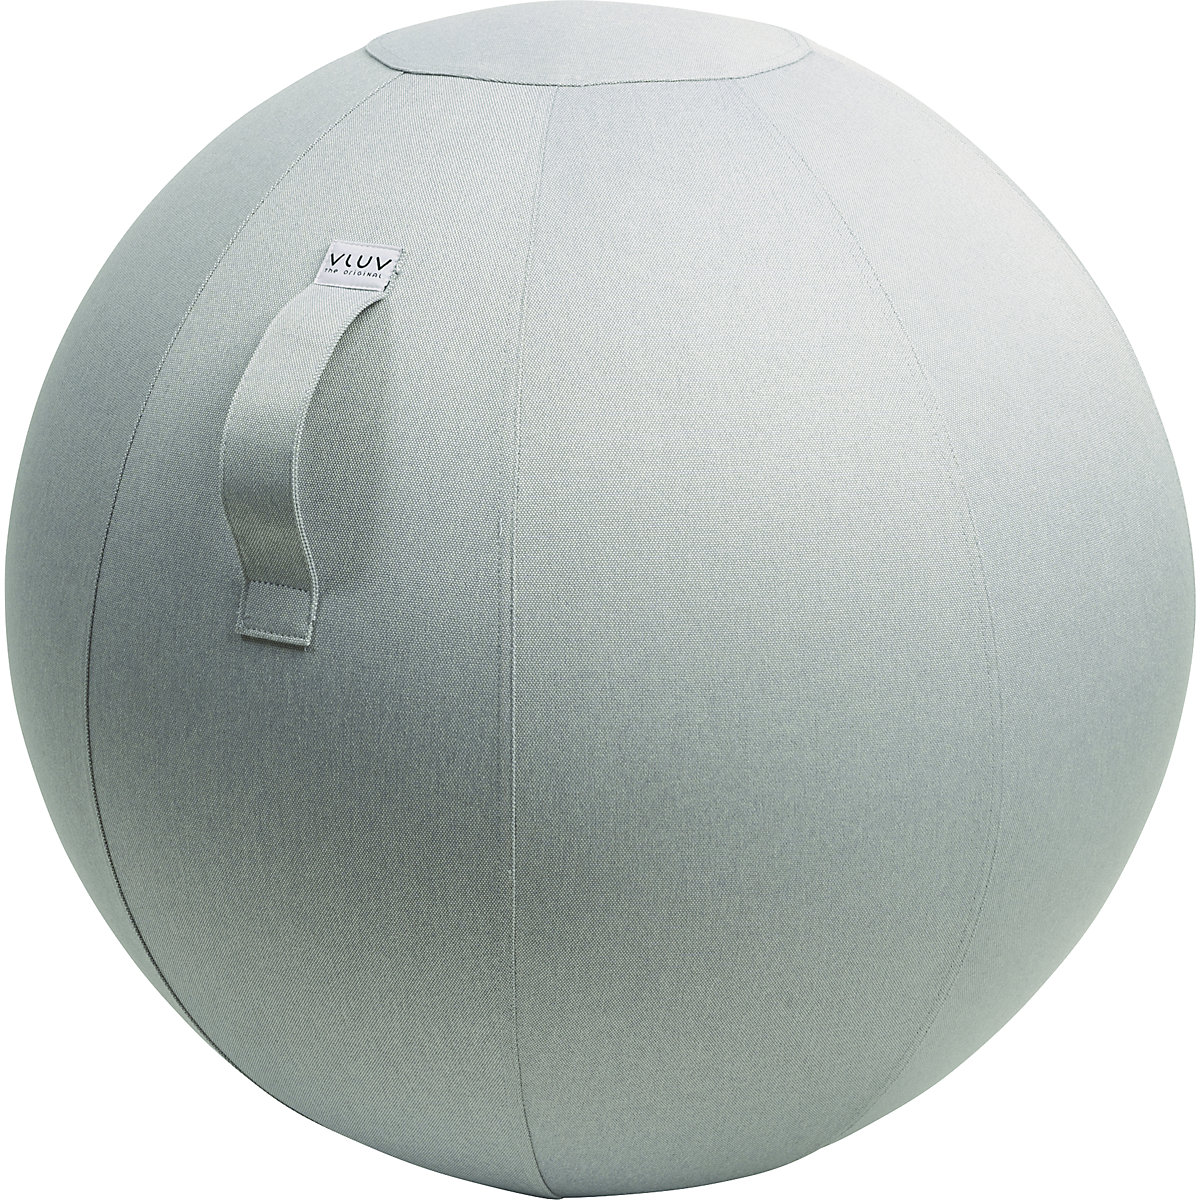 Piłka do siedzenia LEIV – VLUV, pokrowiec z tkaniny o wyglądzie płótna, 700 – 750 mm, srebrno-szara-10